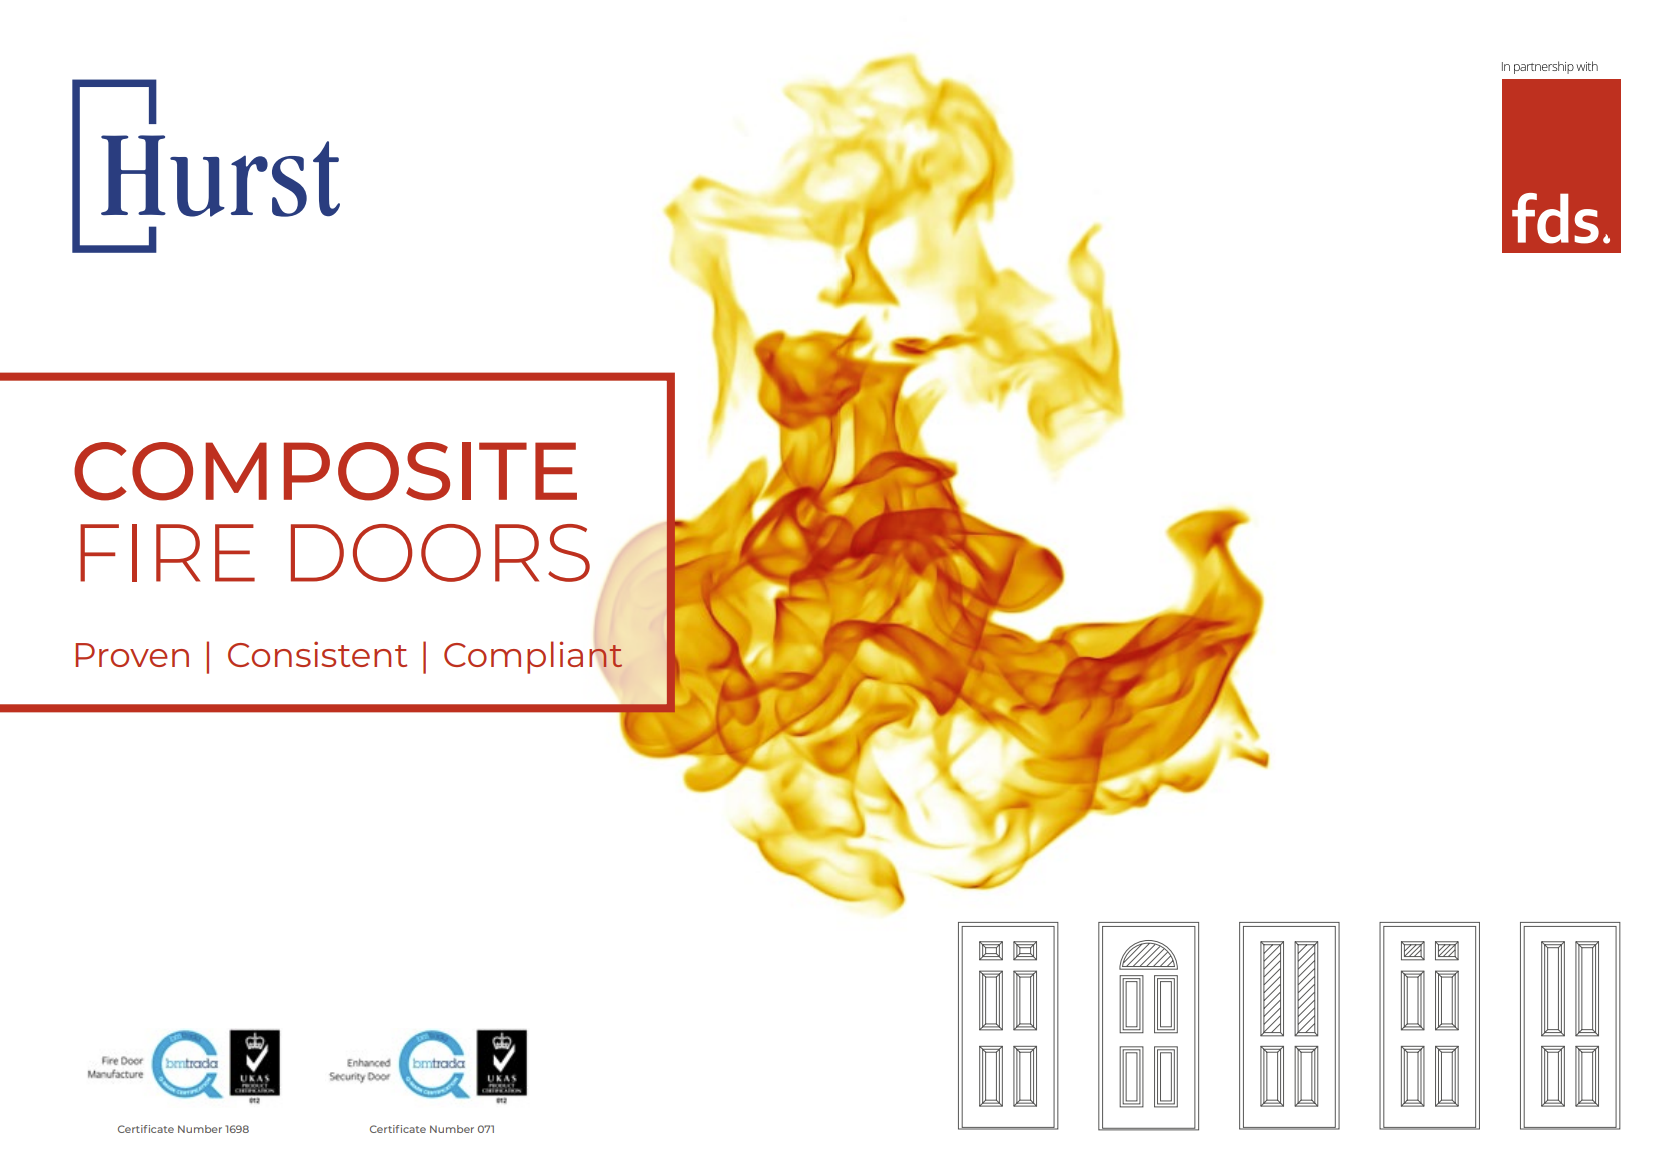 Hurst Composite Fire Doors